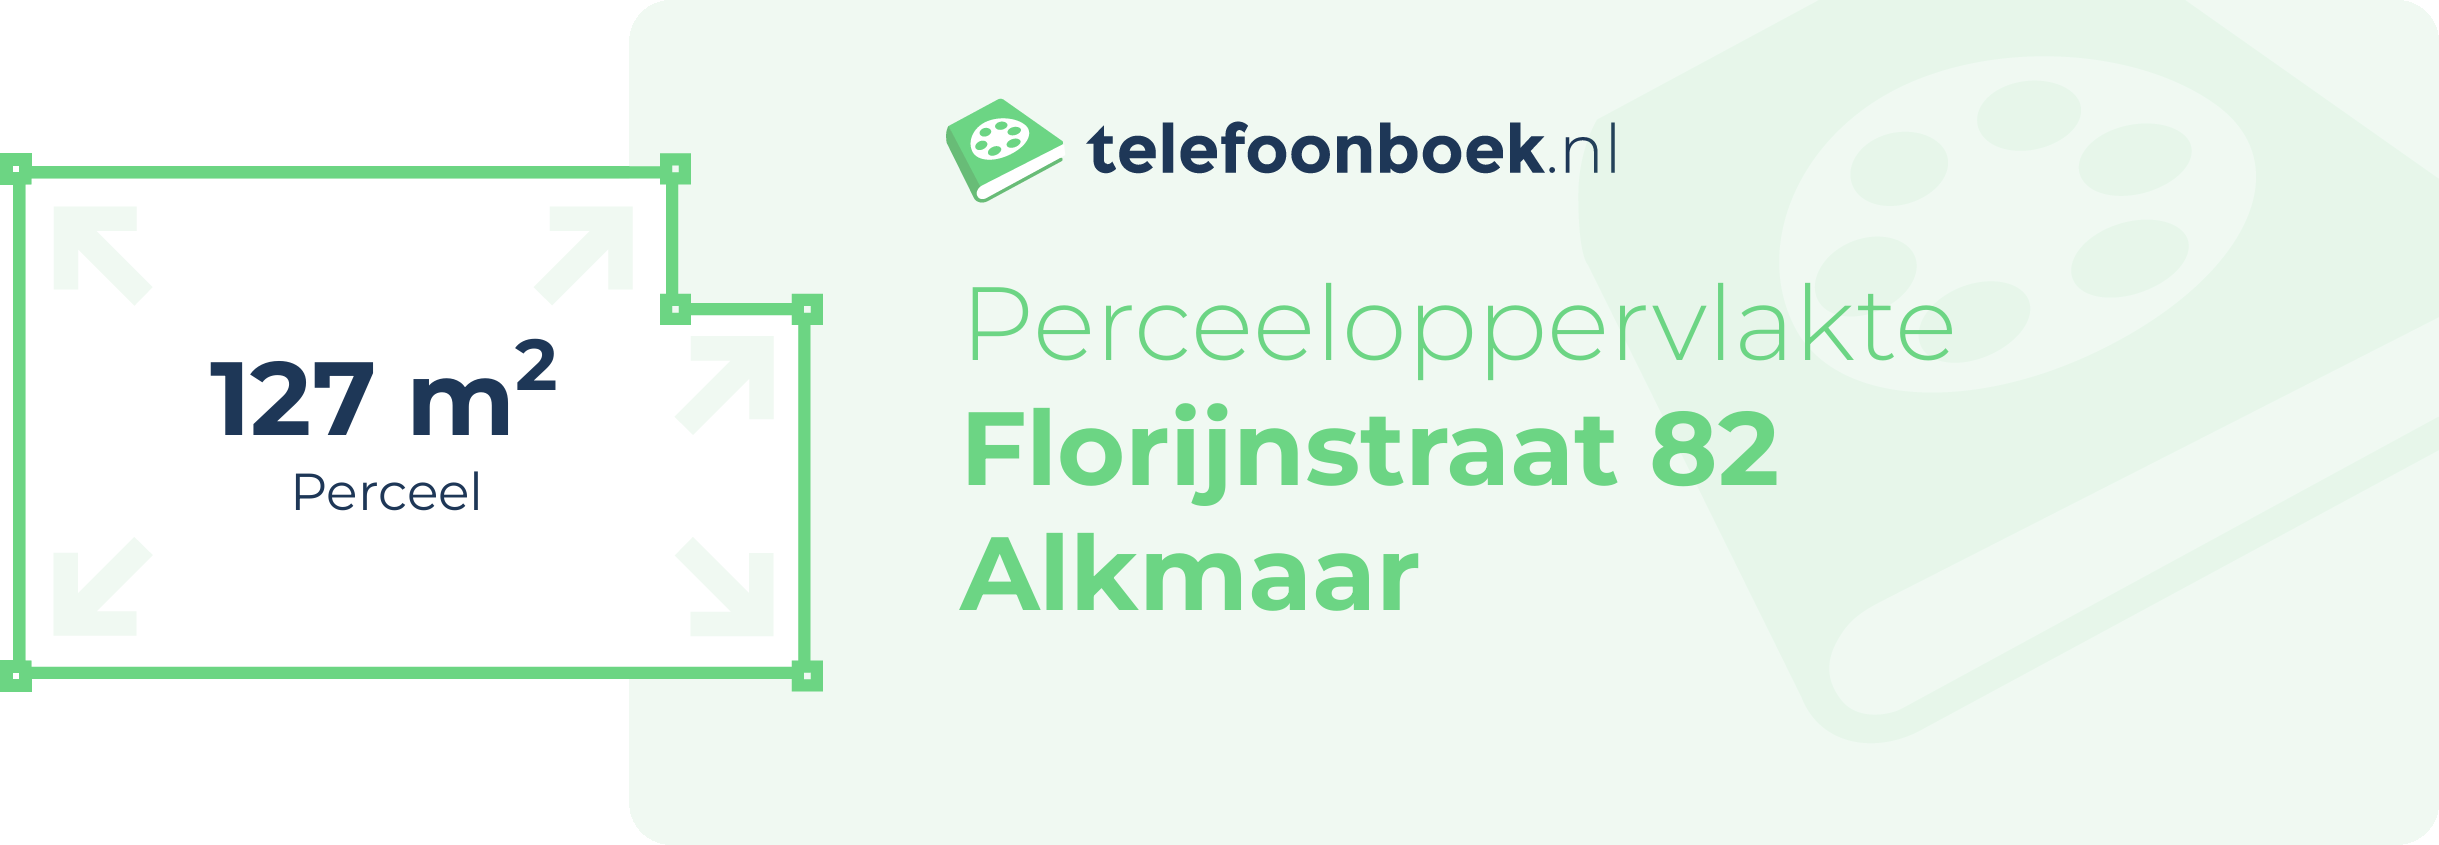 Perceeloppervlakte Florijnstraat 82 Alkmaar